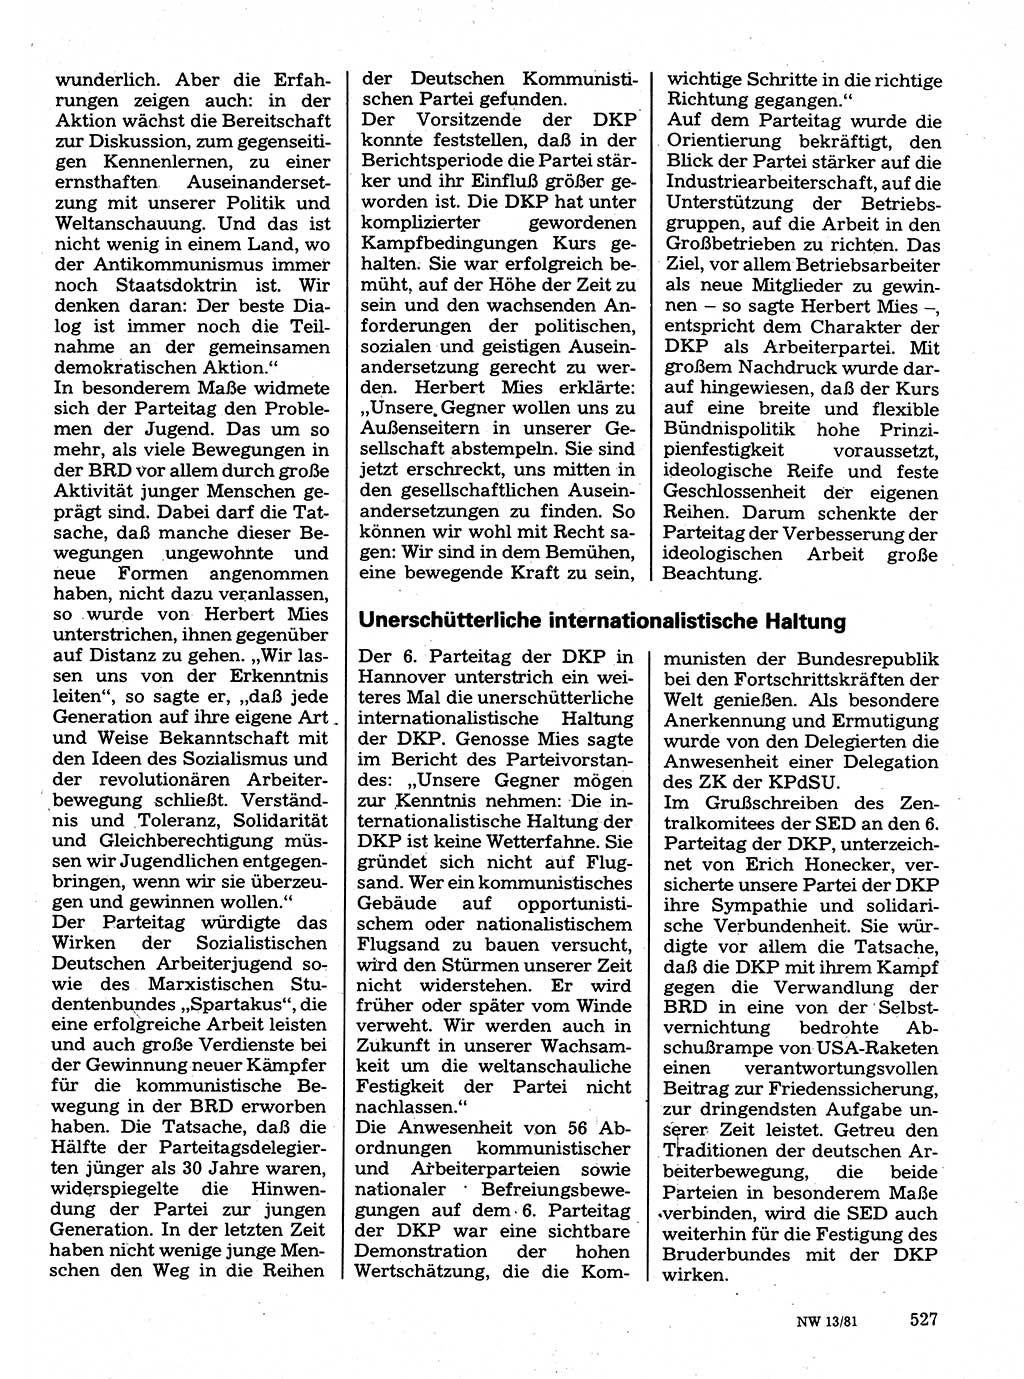 Neuer Weg (NW), Organ des Zentralkomitees (ZK) der SED (Sozialistische Einheitspartei Deutschlands) für Fragen des Parteilebens, 36. Jahrgang [Deutsche Demokratische Republik (DDR)] 1981, Seite 527 (NW ZK SED DDR 1981, S. 527)